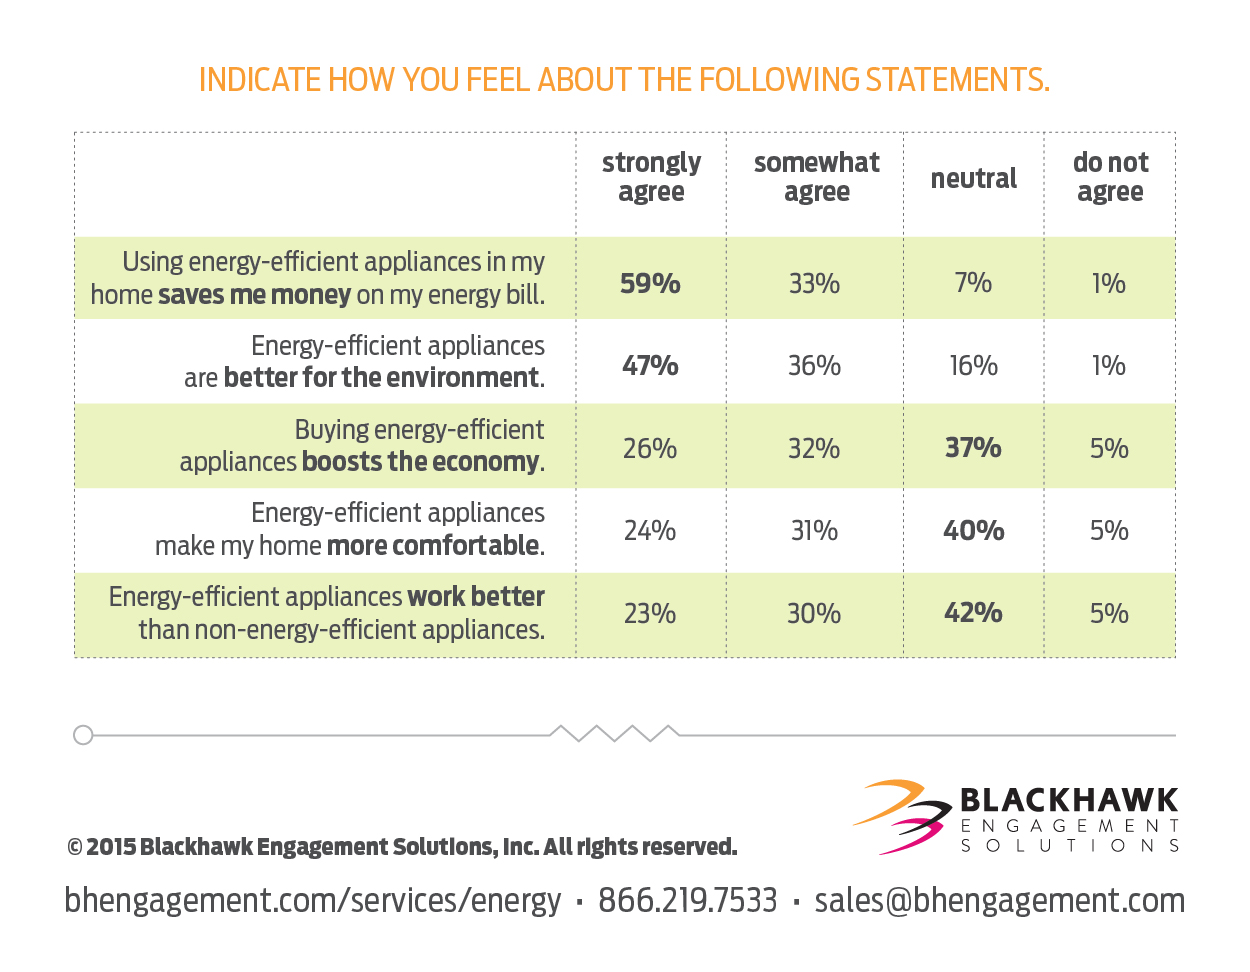 Survey respondent feelings about energy-efficient appliances